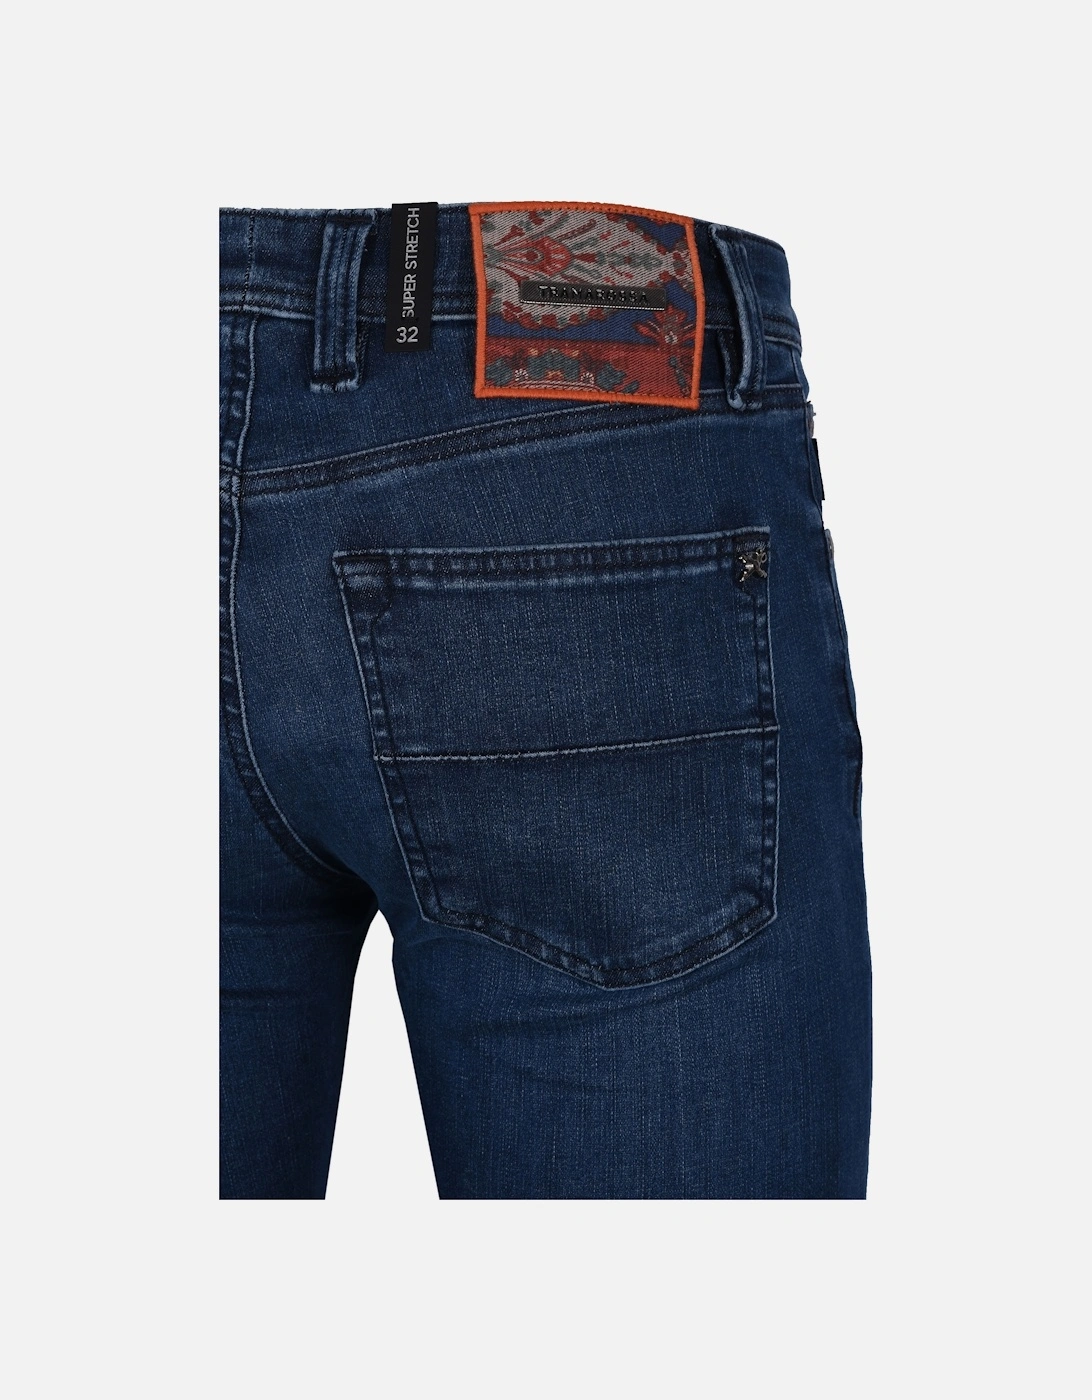 Leonardo Slim Fit Jeans Denim, 7 of 6